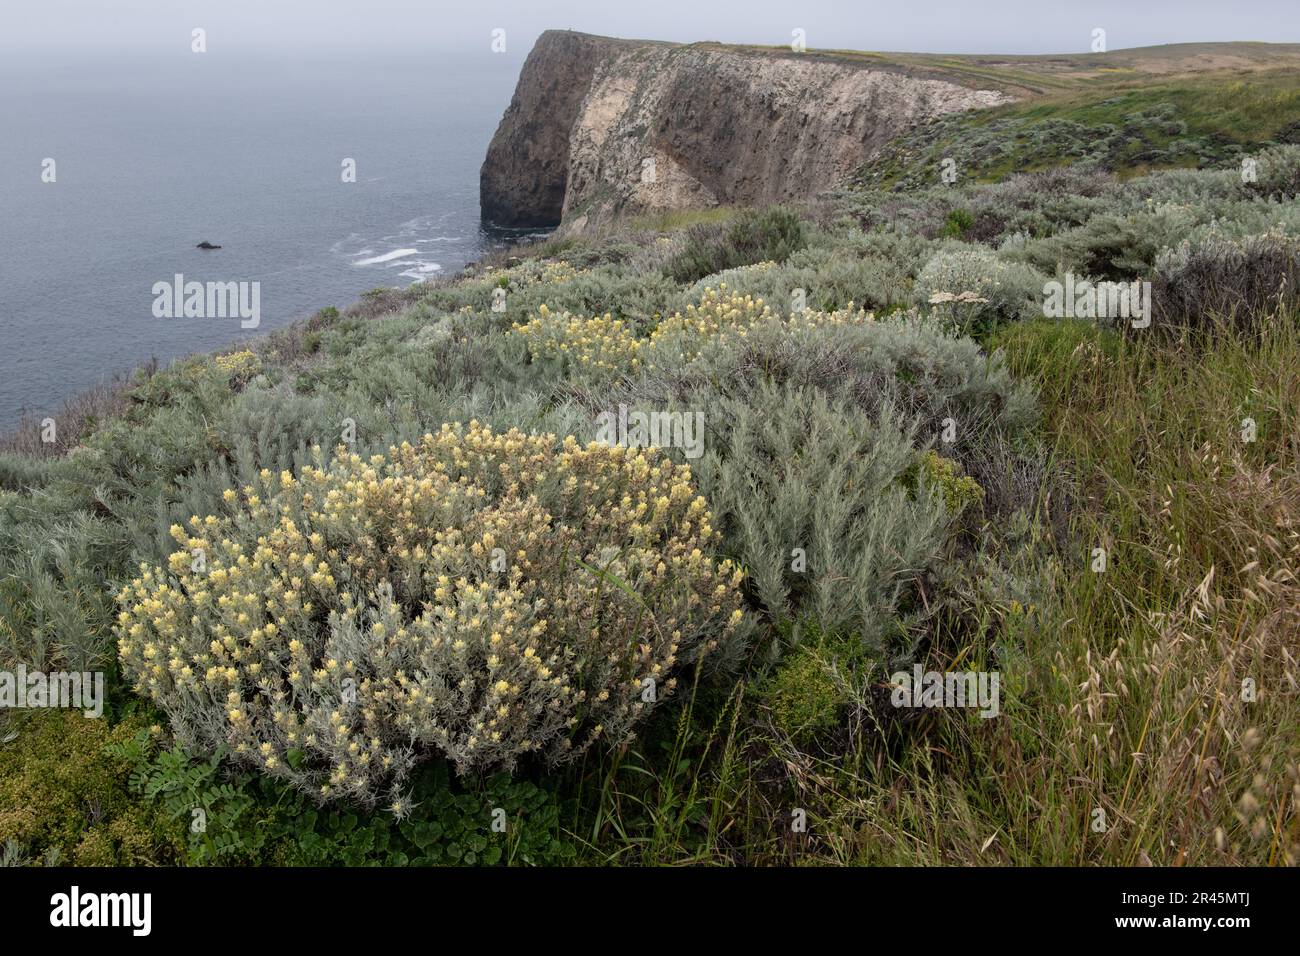 Le paintbrush endémique de l'île, castilleja holeuca, et d'autres plantes indigènes forment une communauté sur l'île de Santa Cruz dans les îles de la Manche, en Californie. Banque D'Images